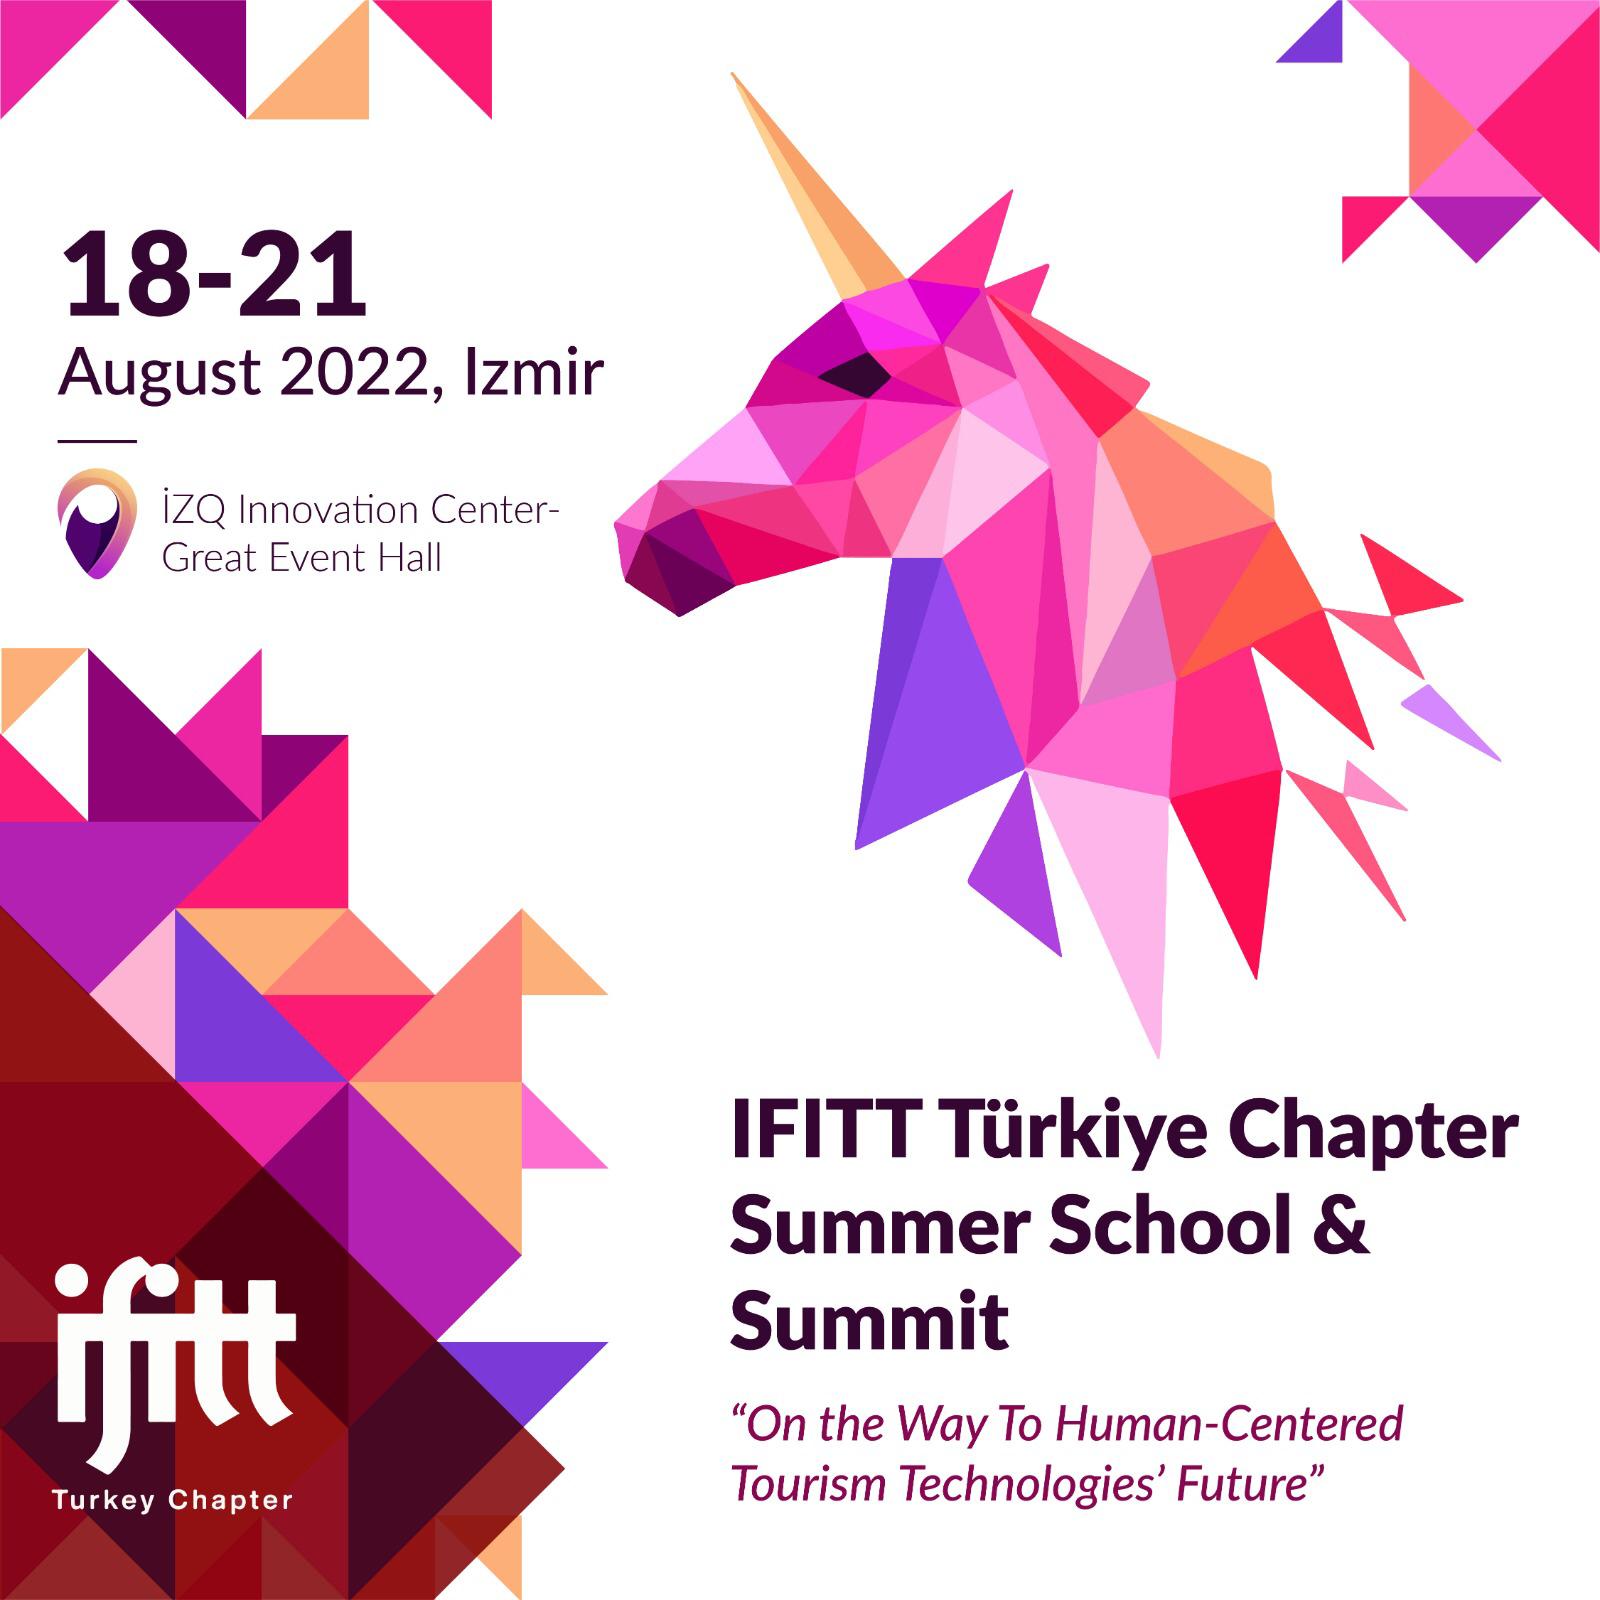 IFITT TÜRKİYE CHAPTER SUMMER SCHOOL & SUMMIT